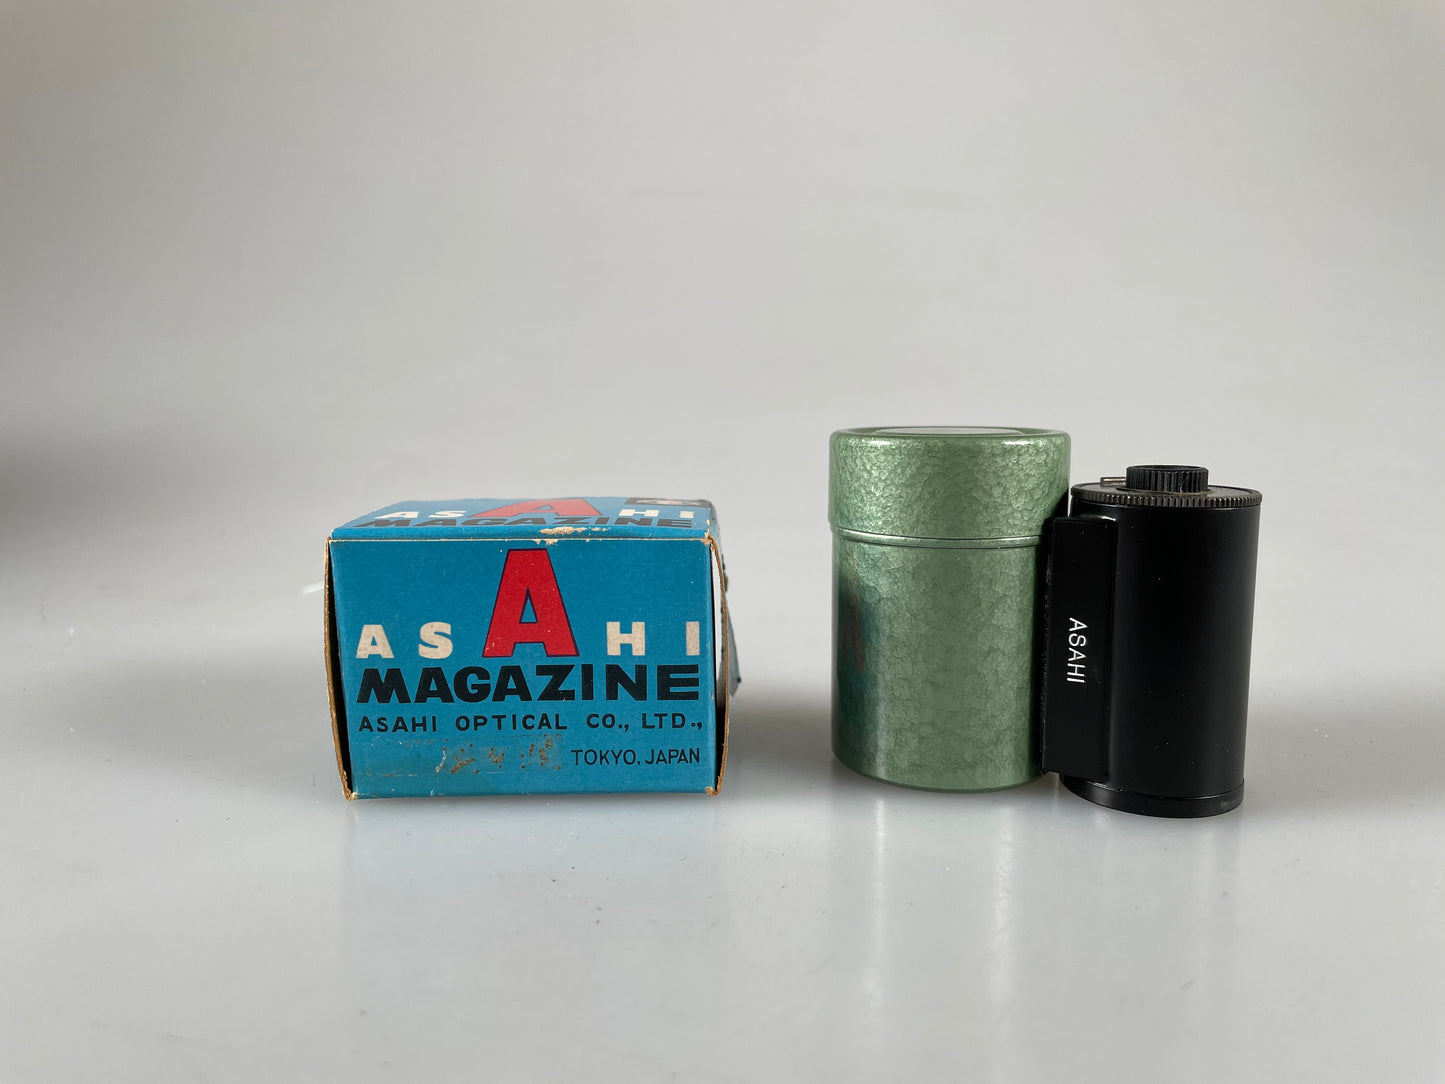 Pentax Asahi 35mm Reloadable Film Cassette